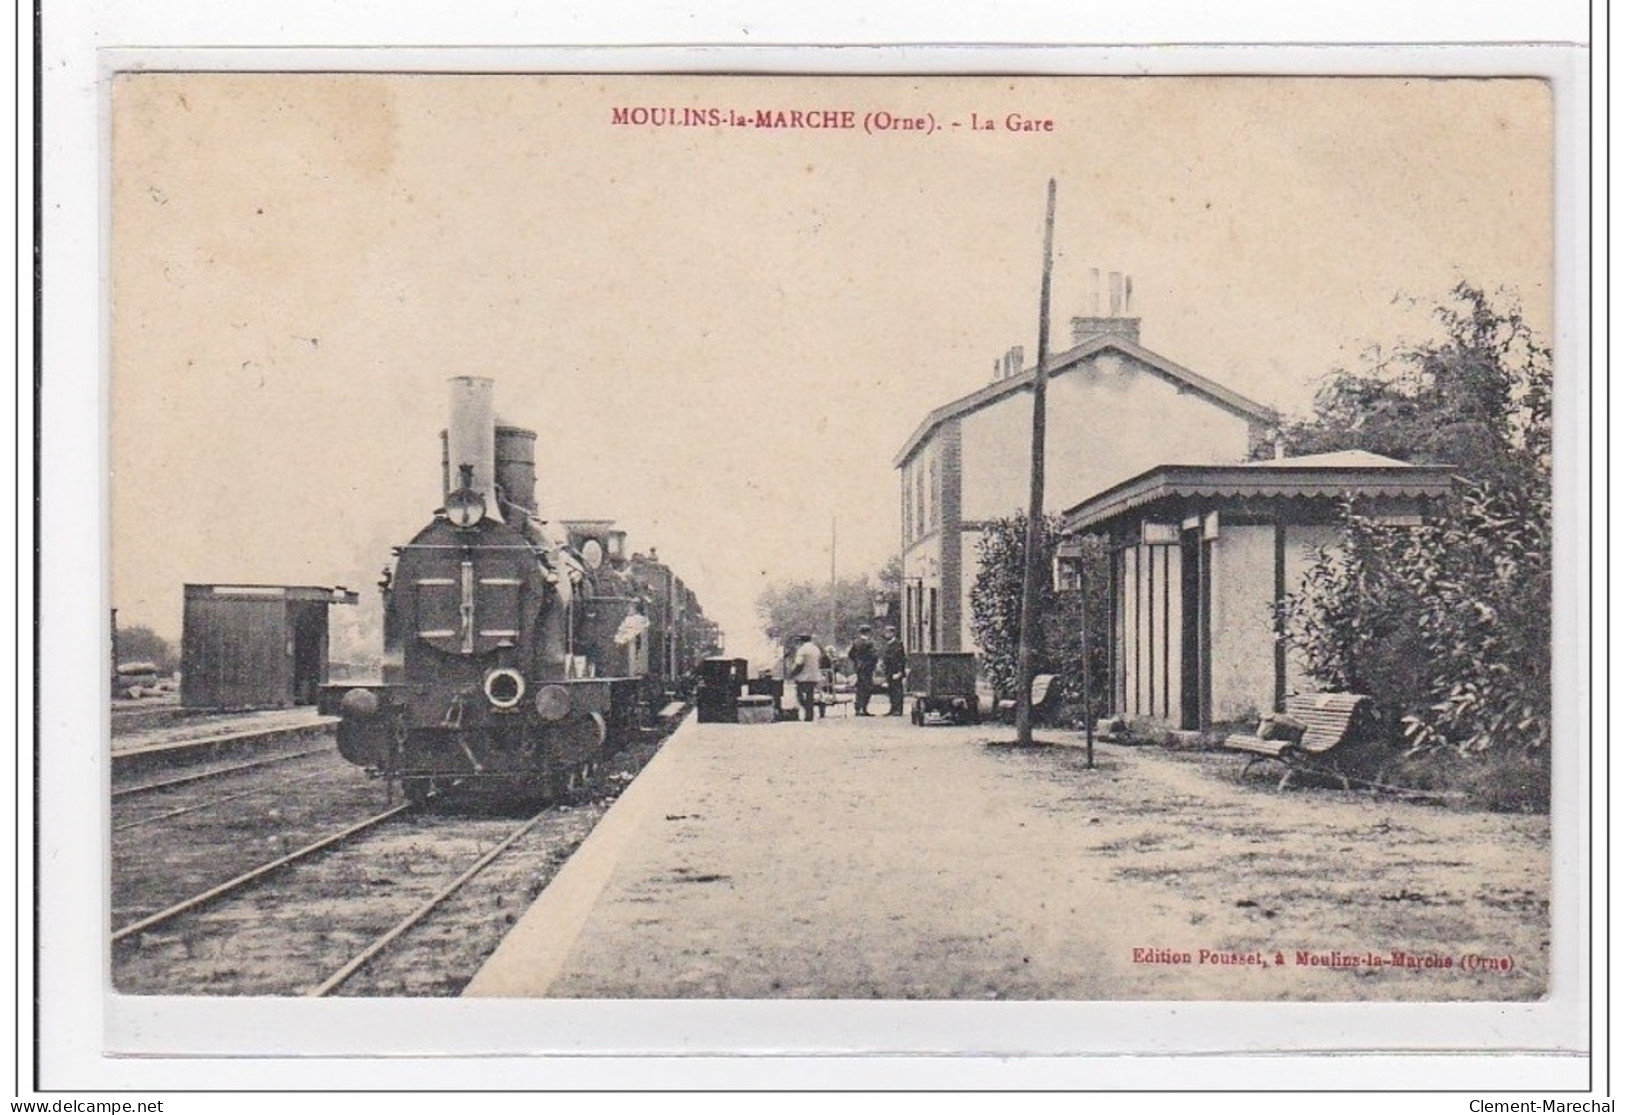 MOULINS-le-MARCH : La Gare (GARE) - Tres Bon Etat - Moulins La Marche